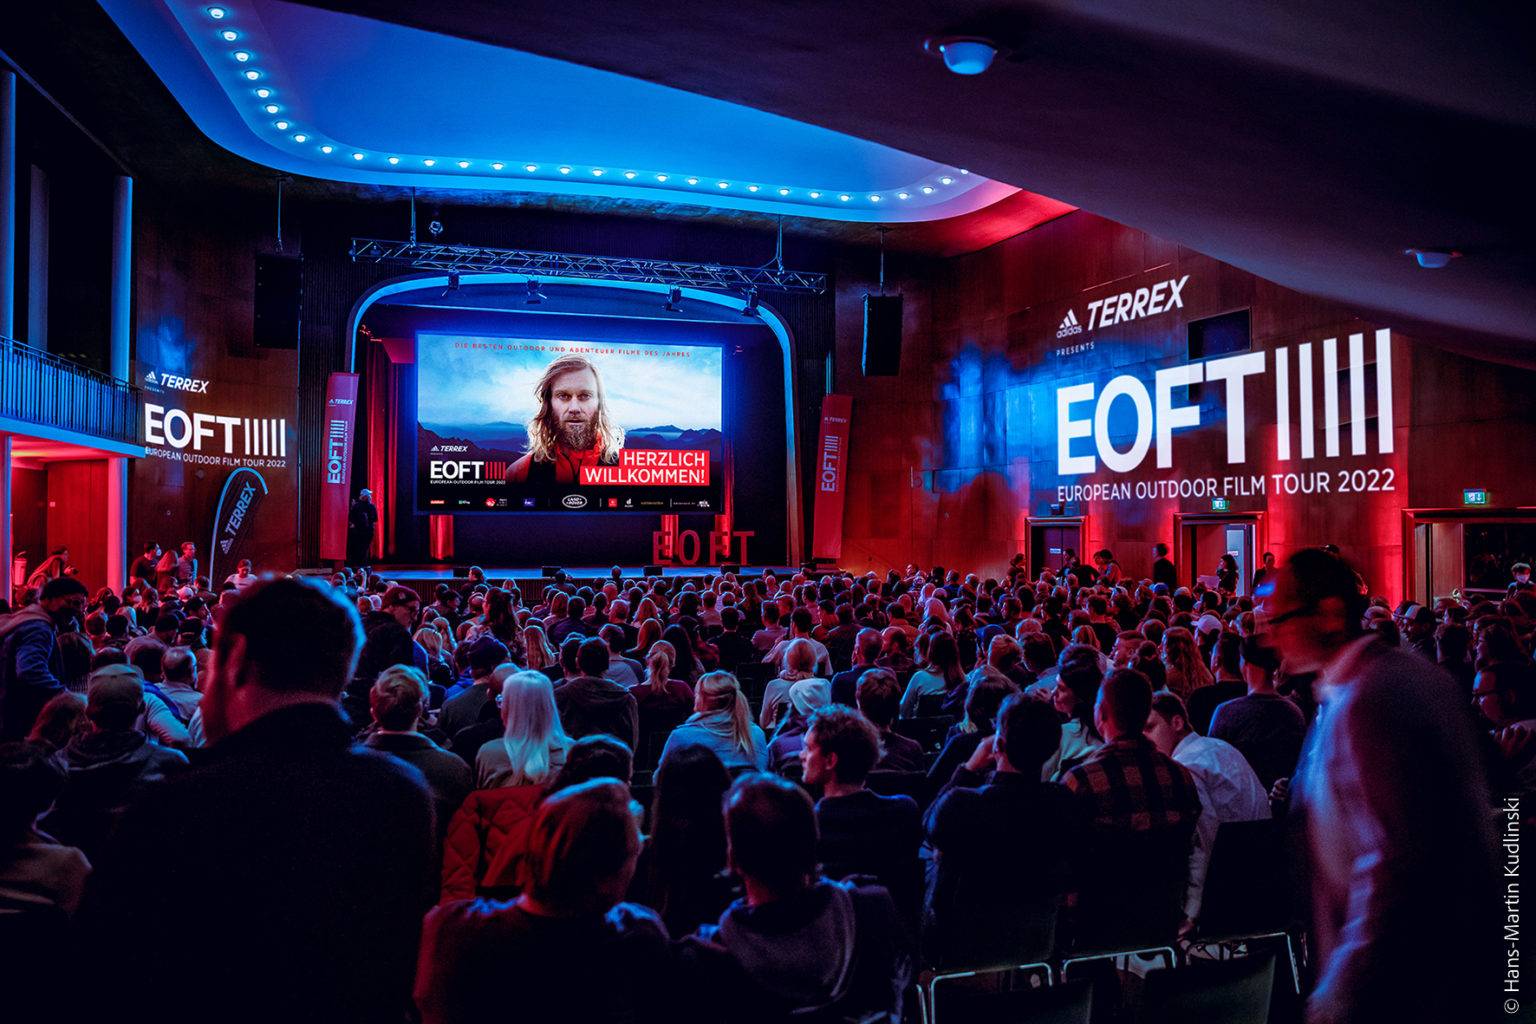 eoft film tour 2022